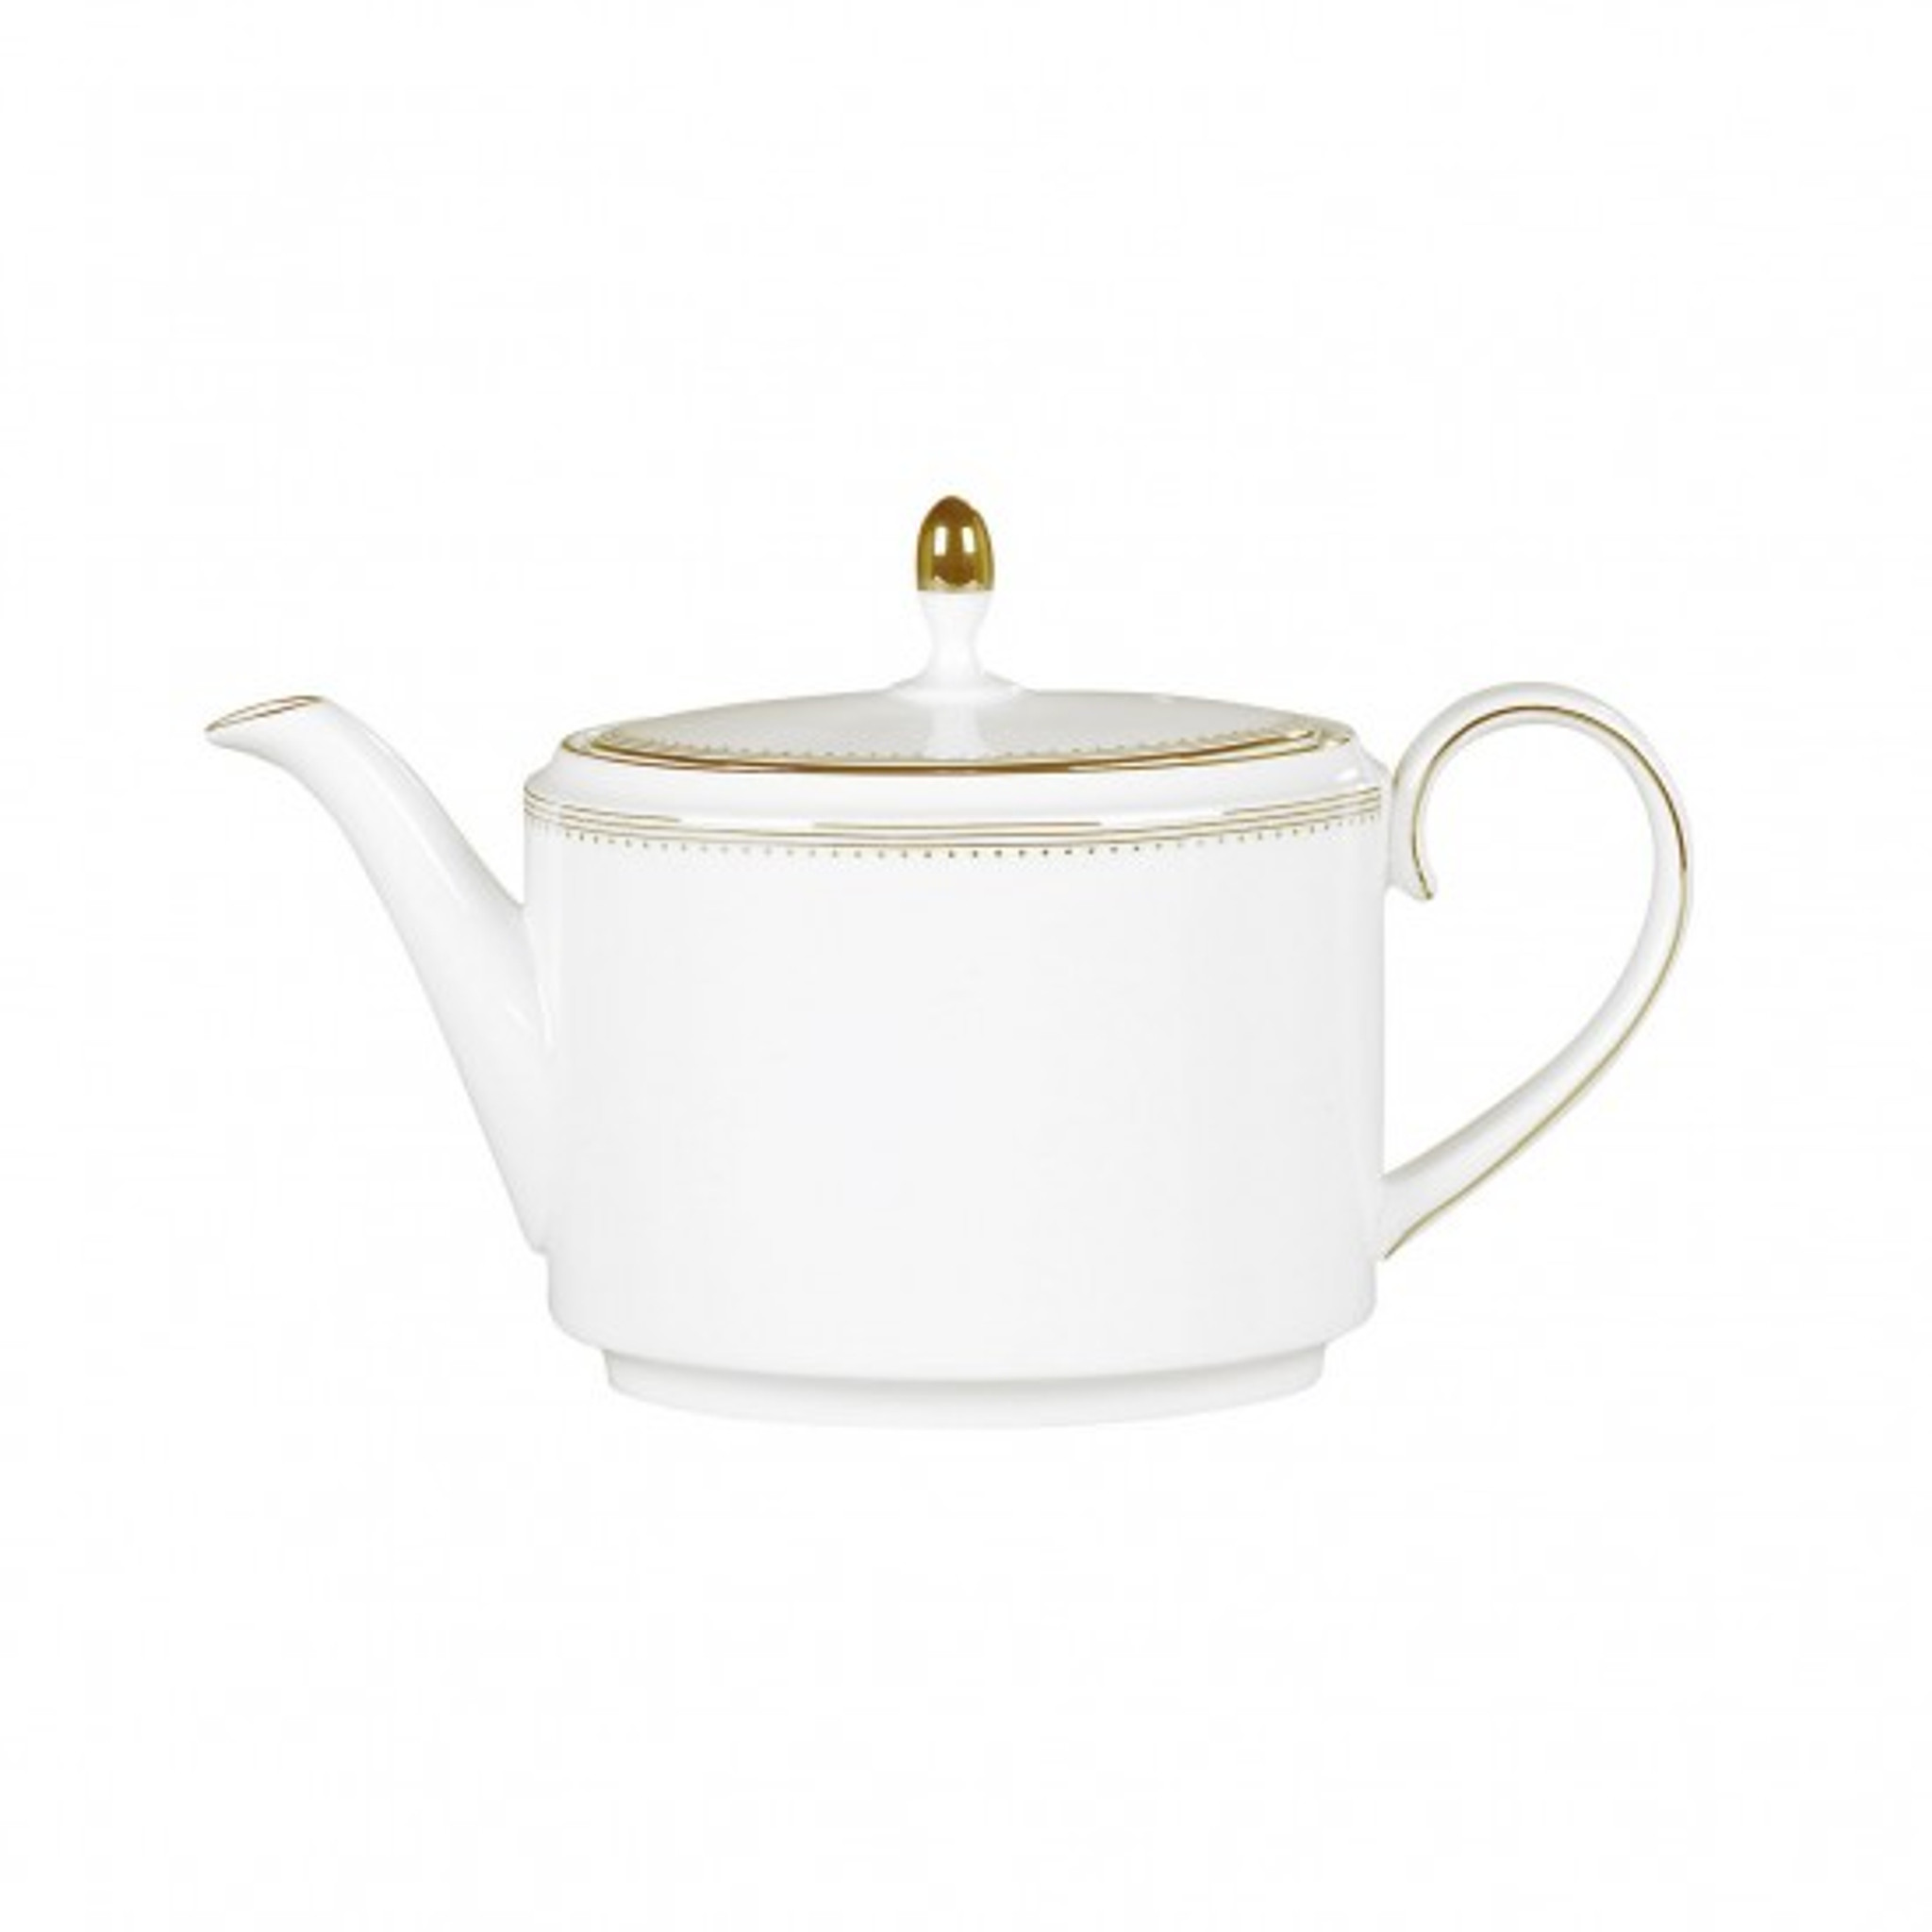 Wedgwood Vera Wang Golden Grosgrain Teapot